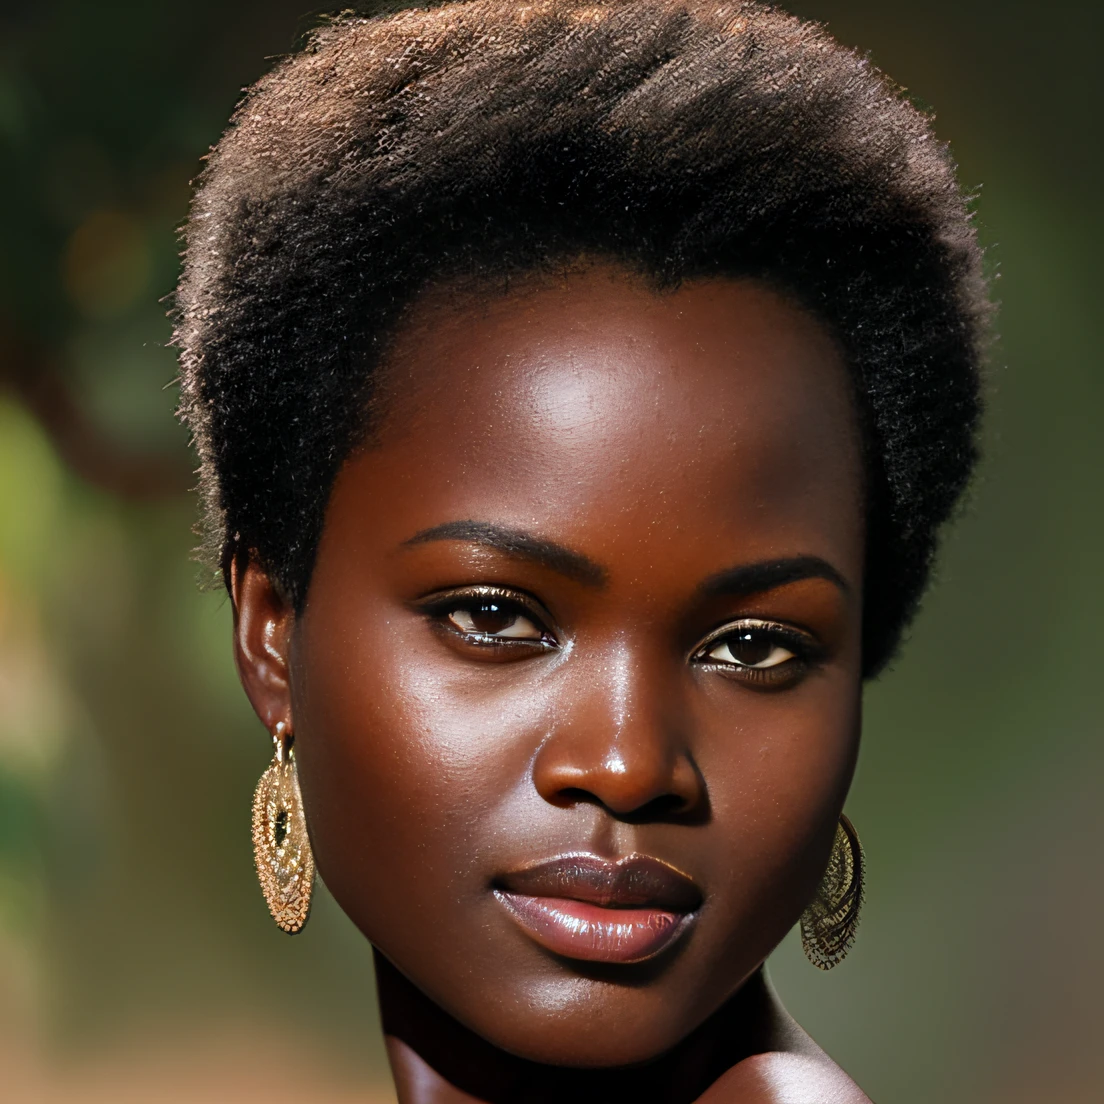 (шедевр, Высшее качество, сверхдетализированная компьютерная графика) 1 женщина, красивый, Африка, бритая стрижка, темно-коричневая кожа, тусклый свет Алекс Росс:1.3